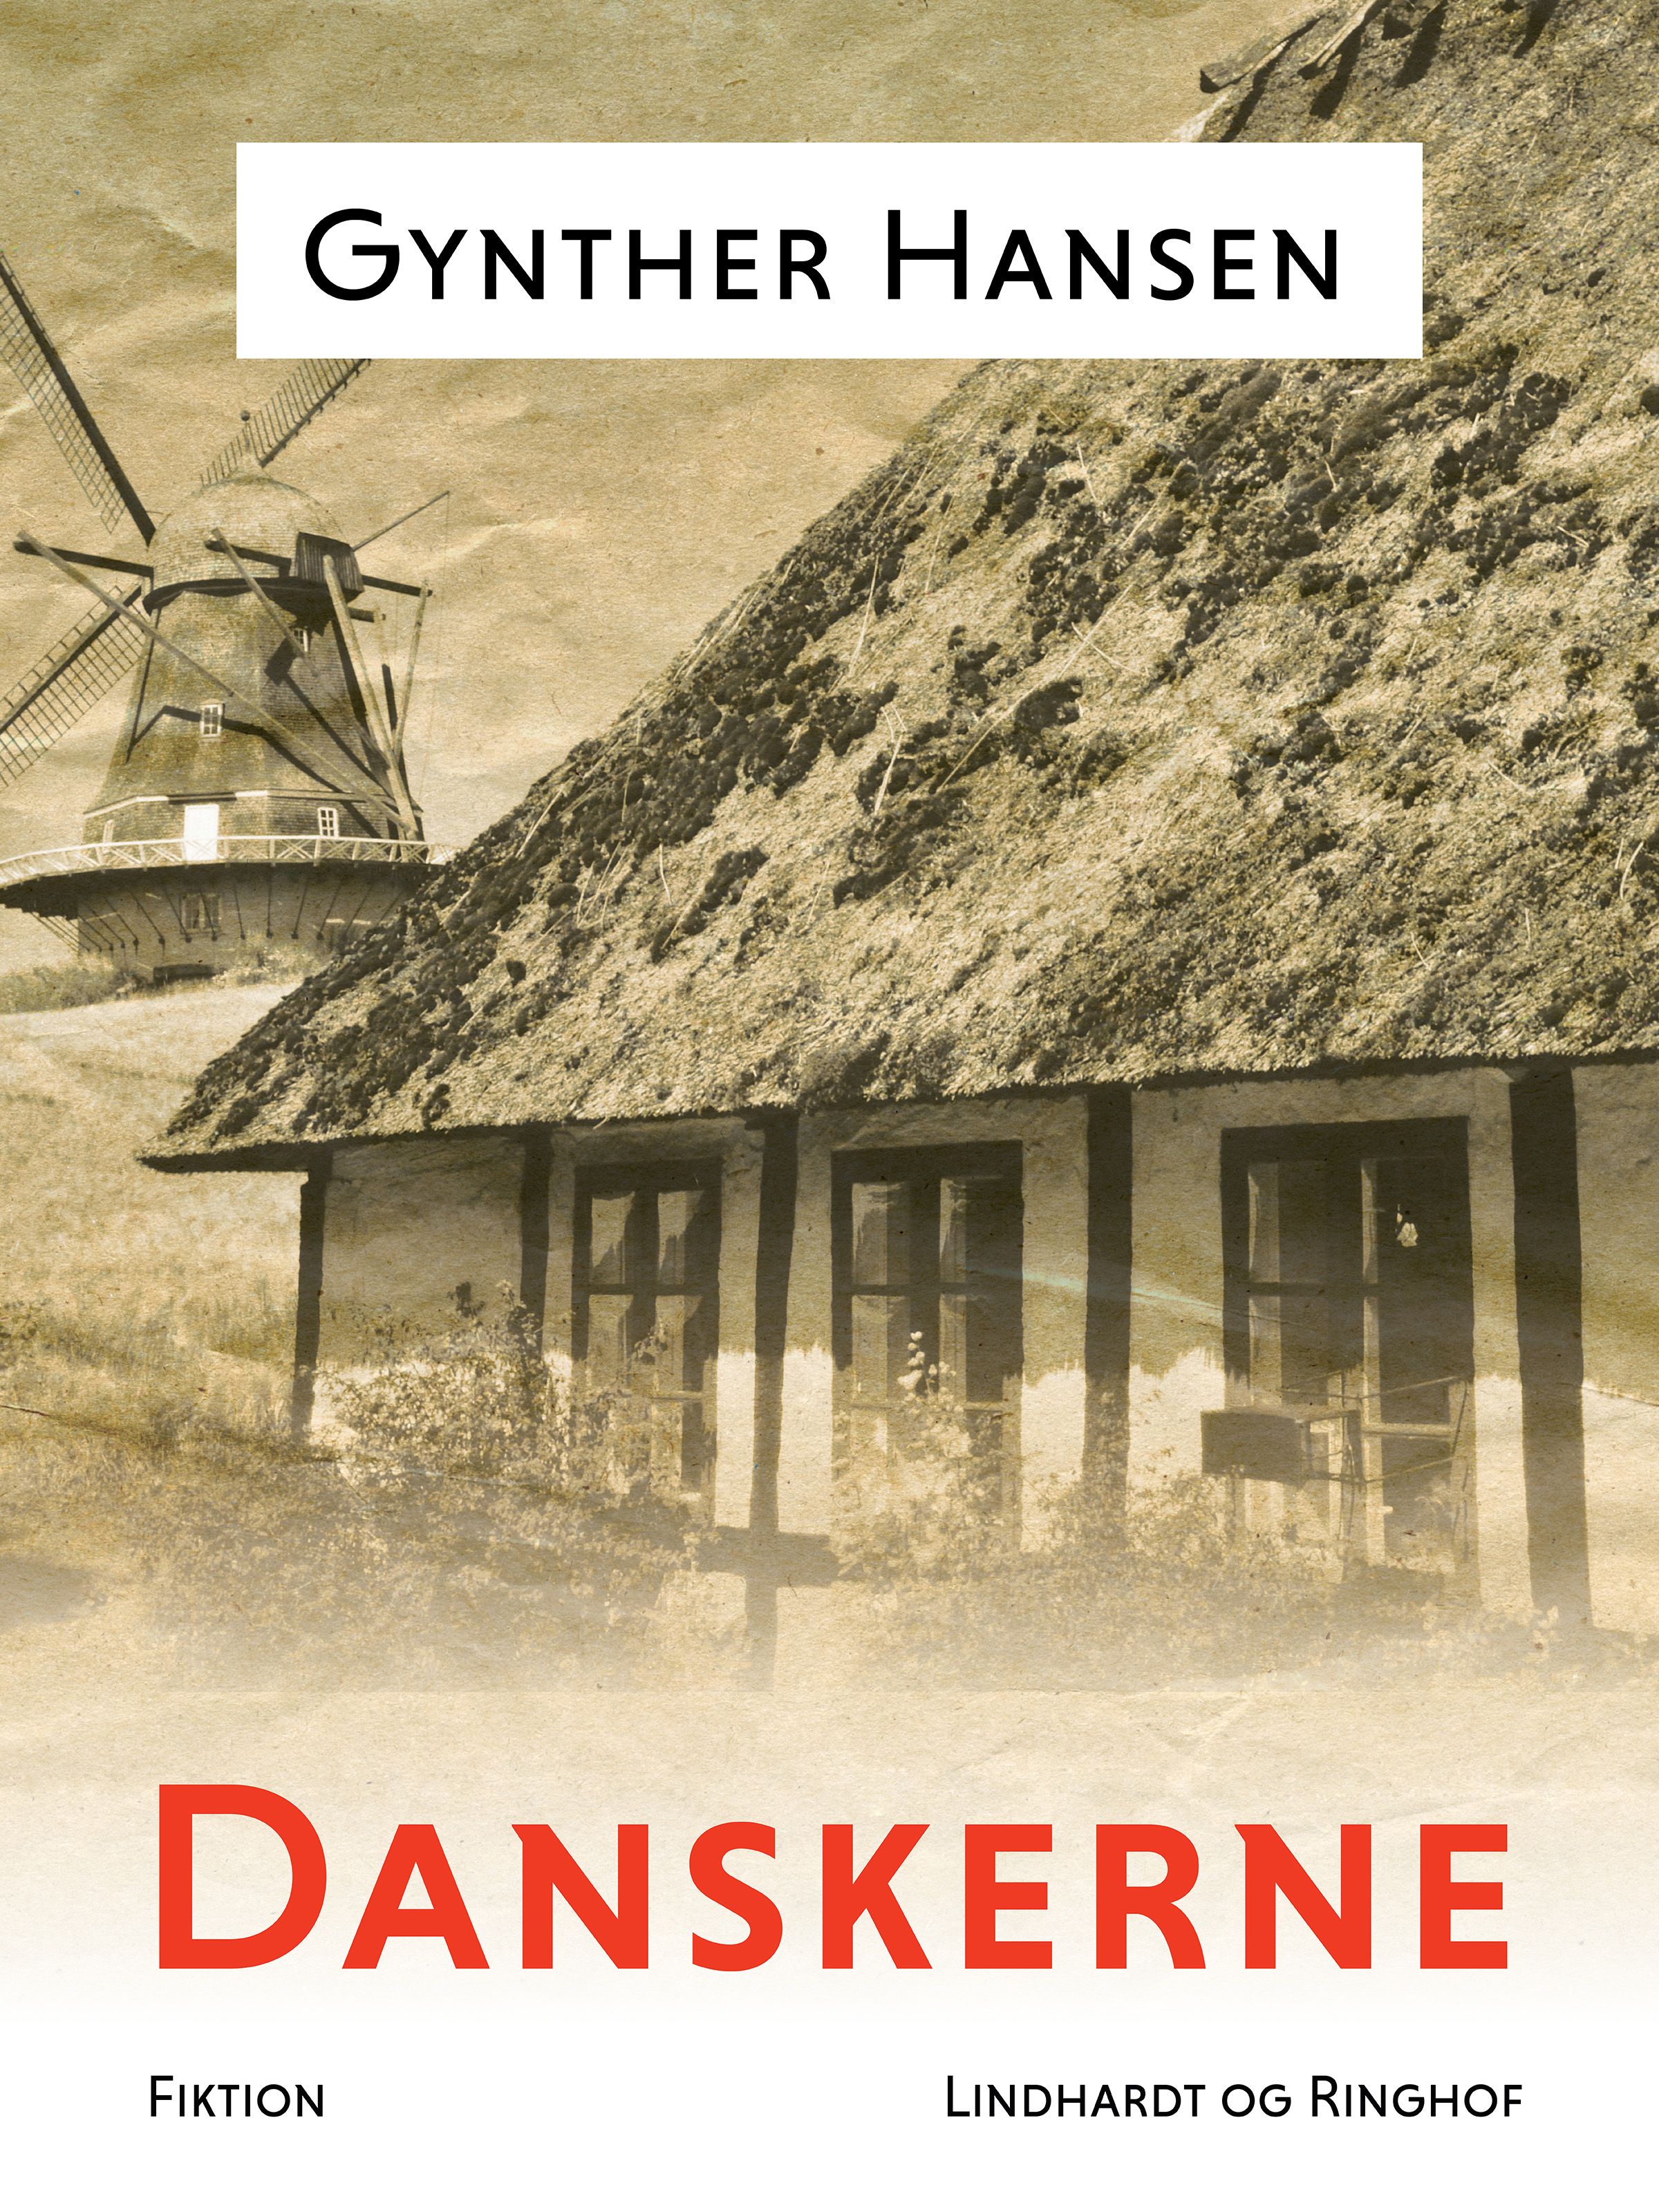 Danskerne, e-bog af Gynther Hansen